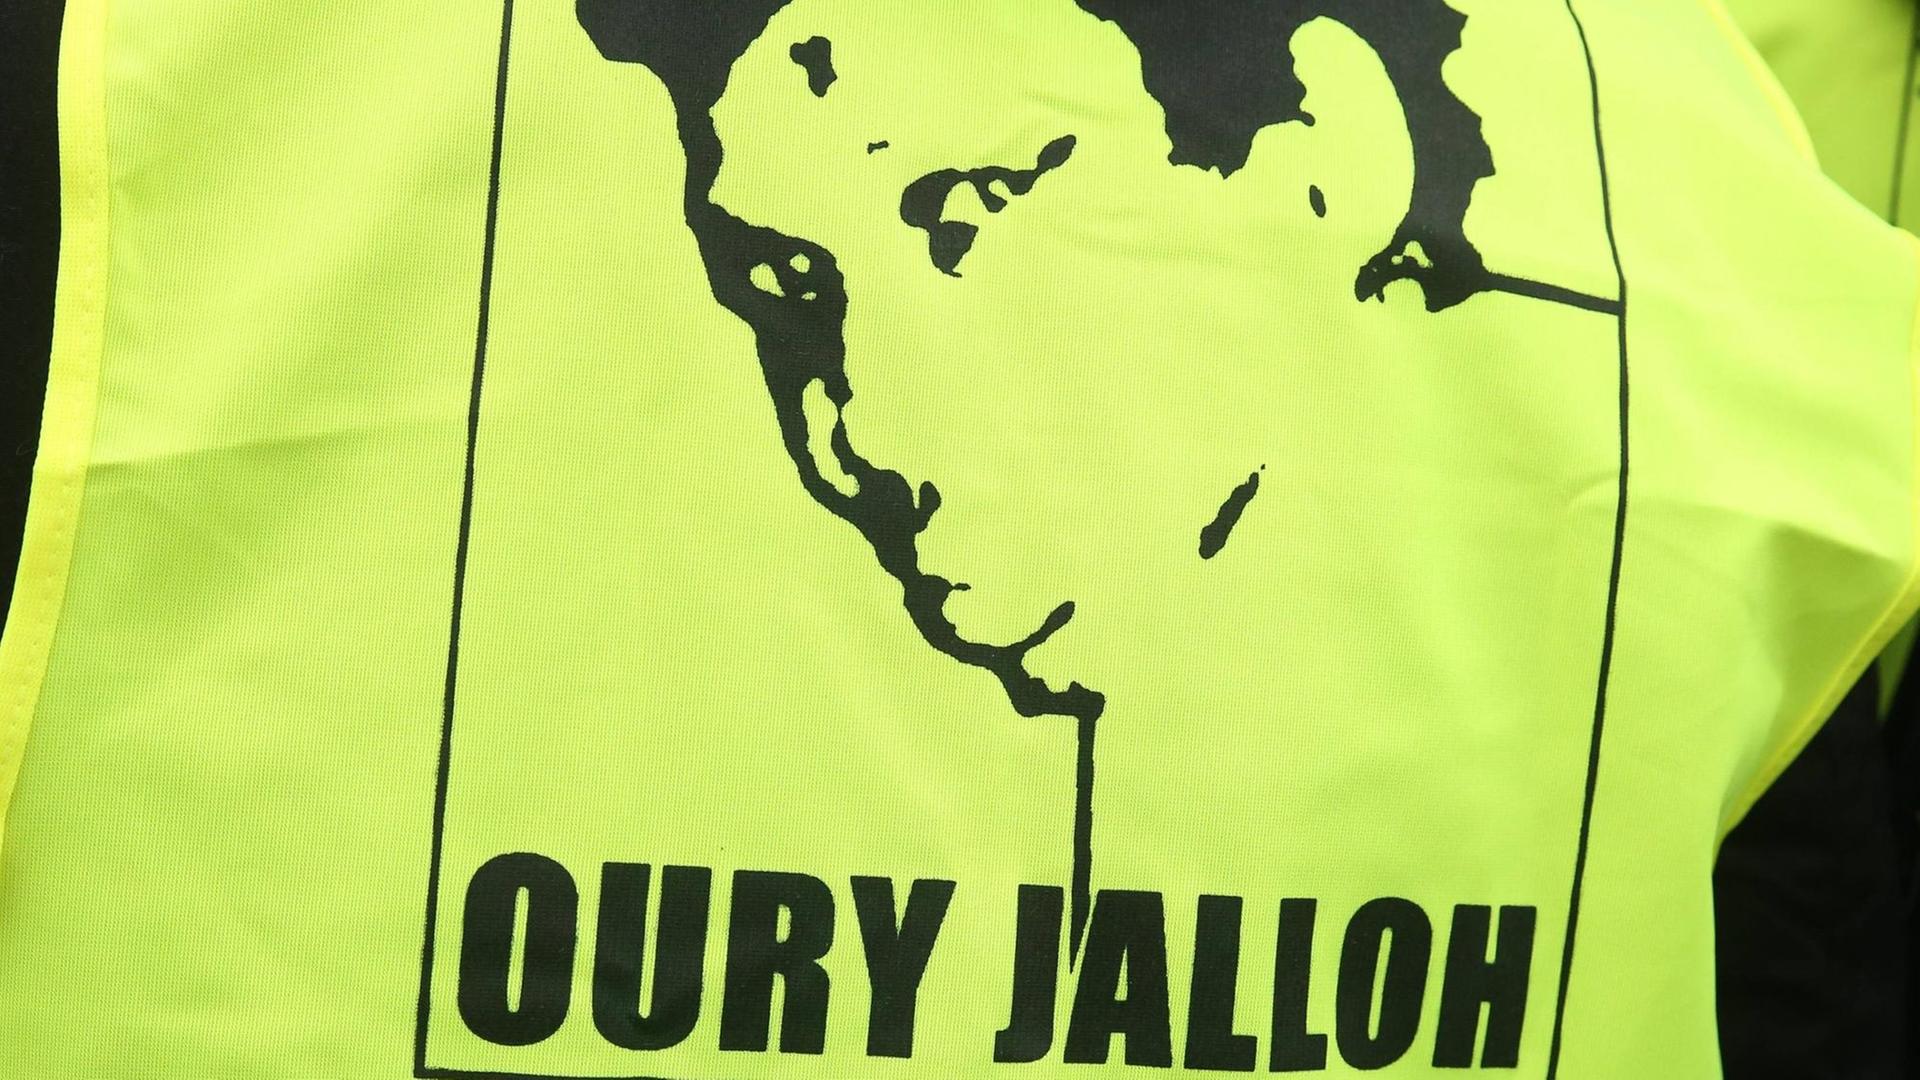 Oury Jallohs Konterfei auf einem Demo-Transparent. Jalloh ist 2005 auf einer Dessauer Polizeiwache verbrannt.